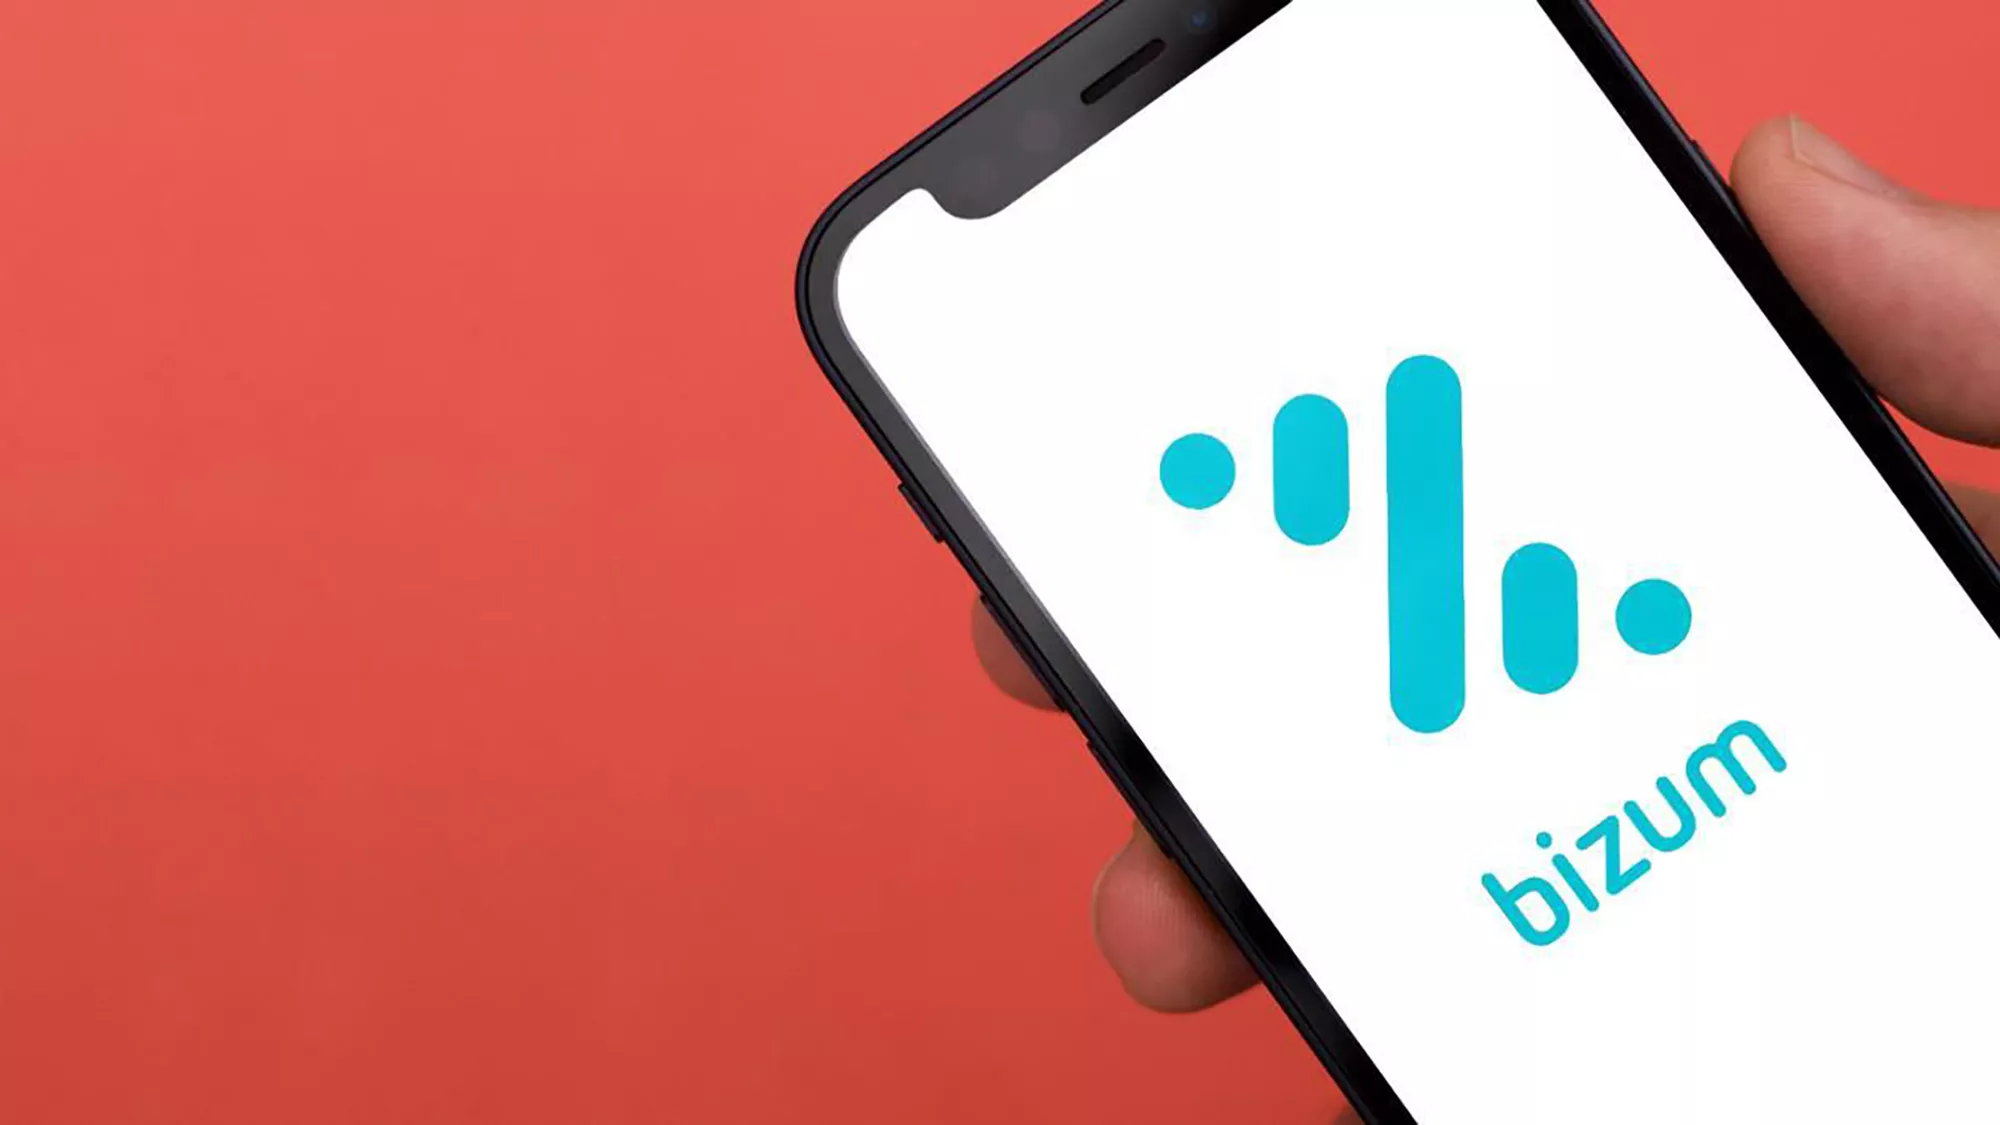 Bizum es un método de pago rápido, sencillo y eficaz mediante el teléfono móvil.